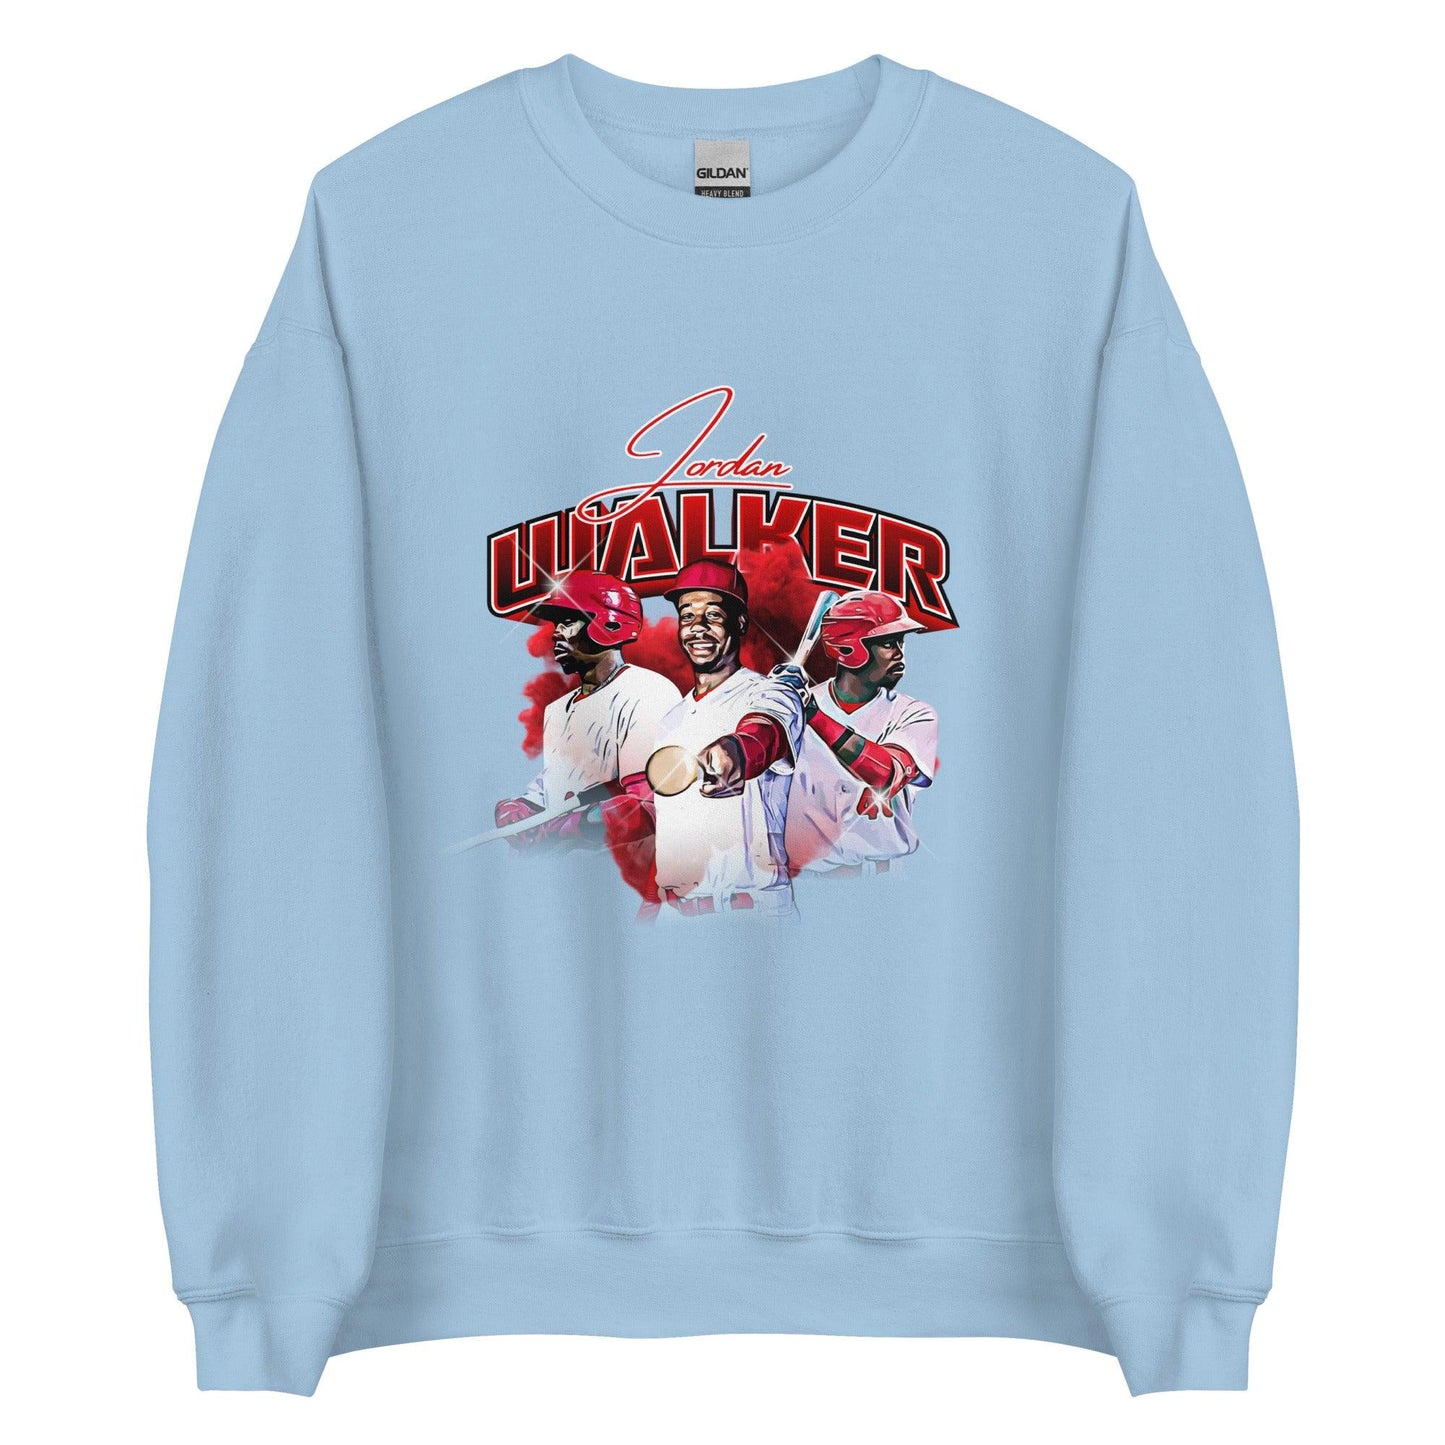 Jordan Walker “Essential” Sweatshirt - Fan Arch